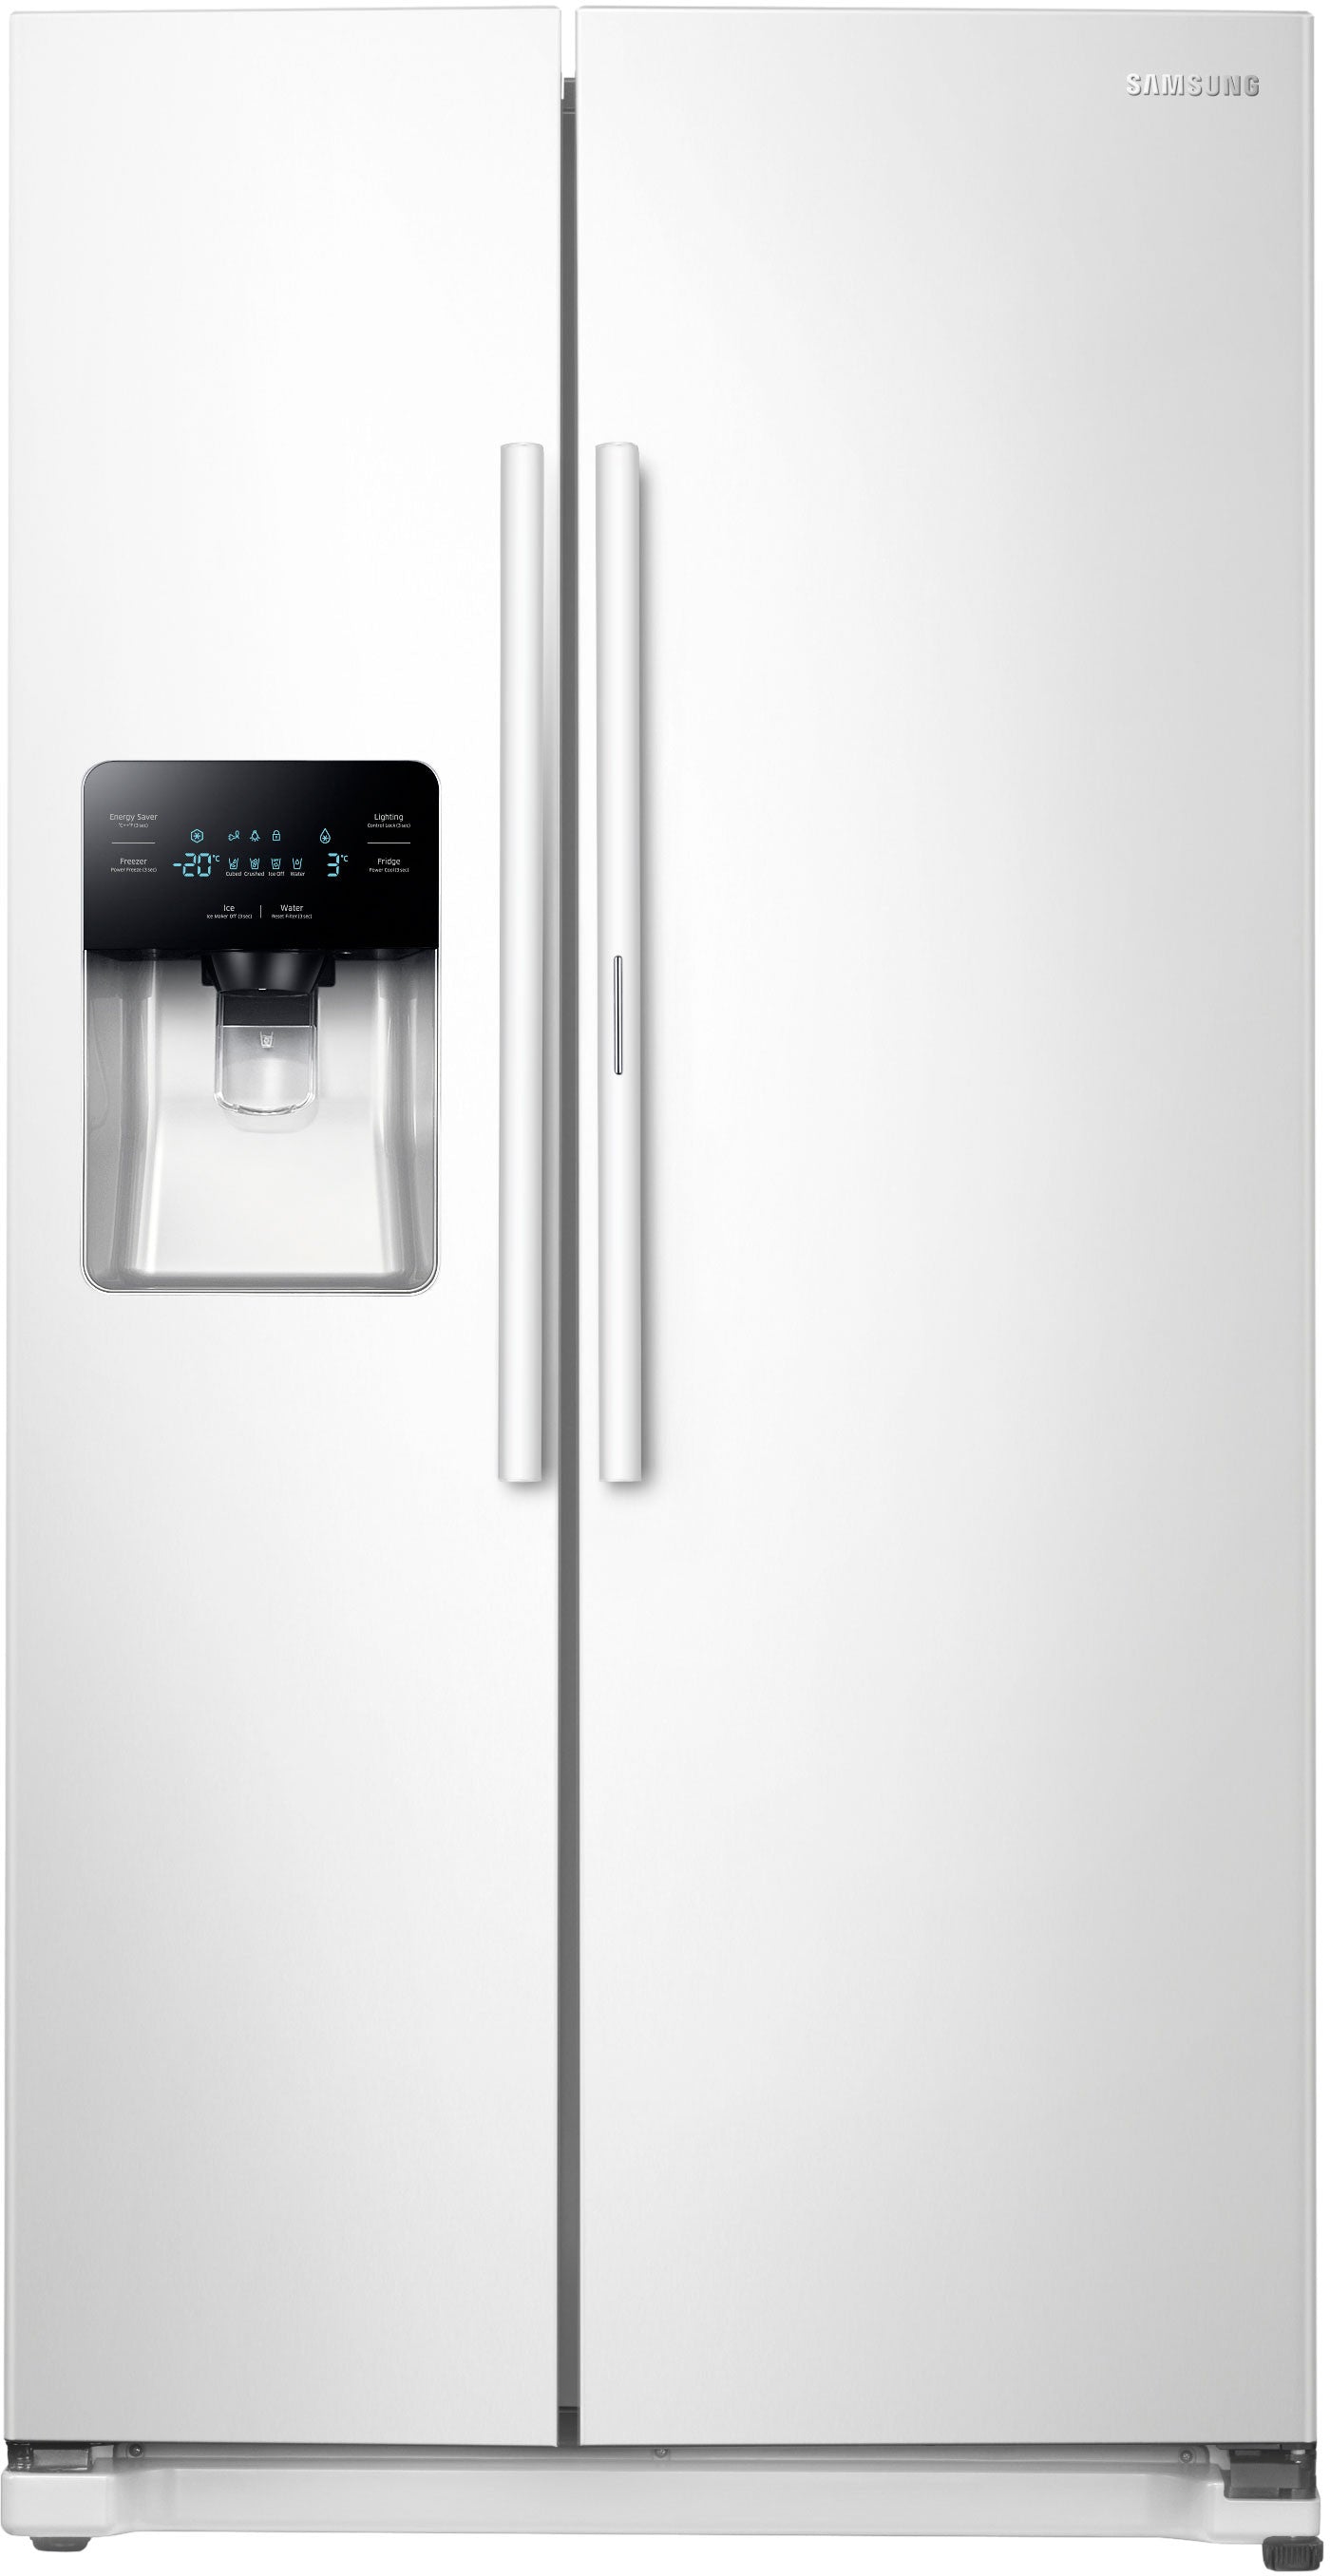 Samsung RH25H5611WW/AA 24.7 Cu. Ft. Side-by-side Refrigerator